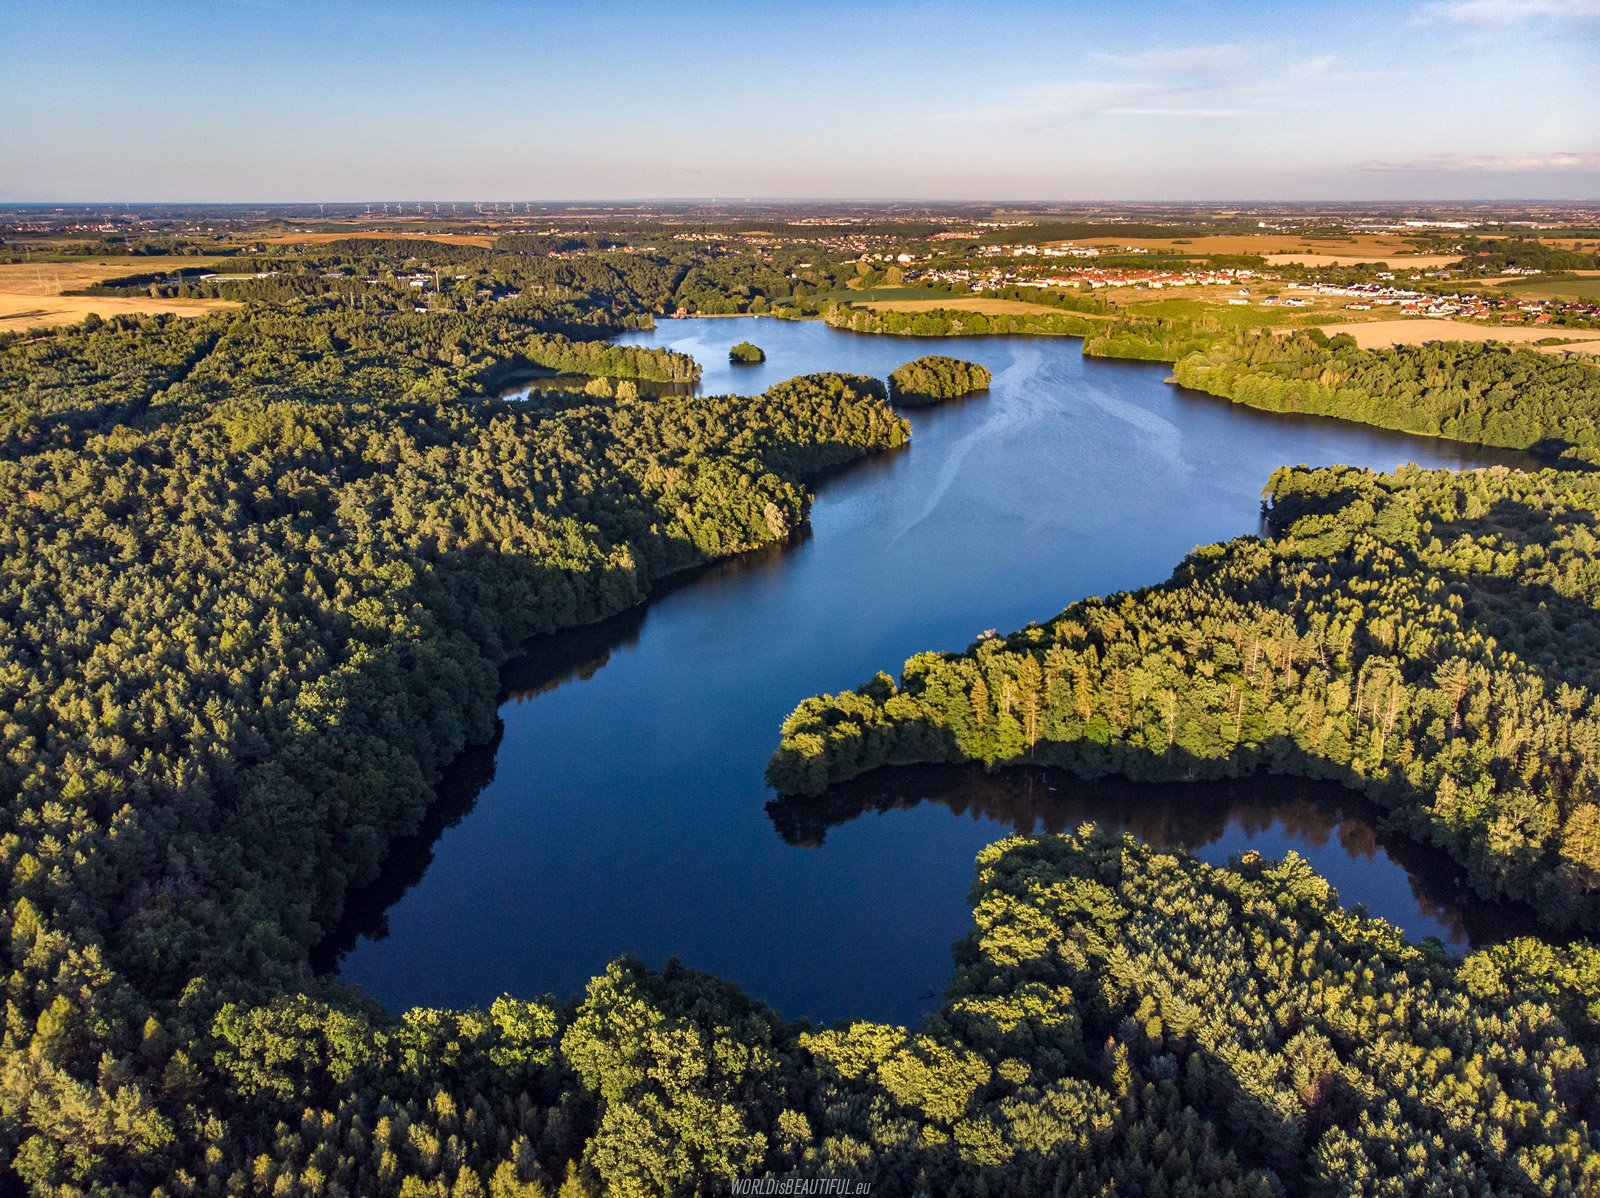 Jezioro Straszyńskie